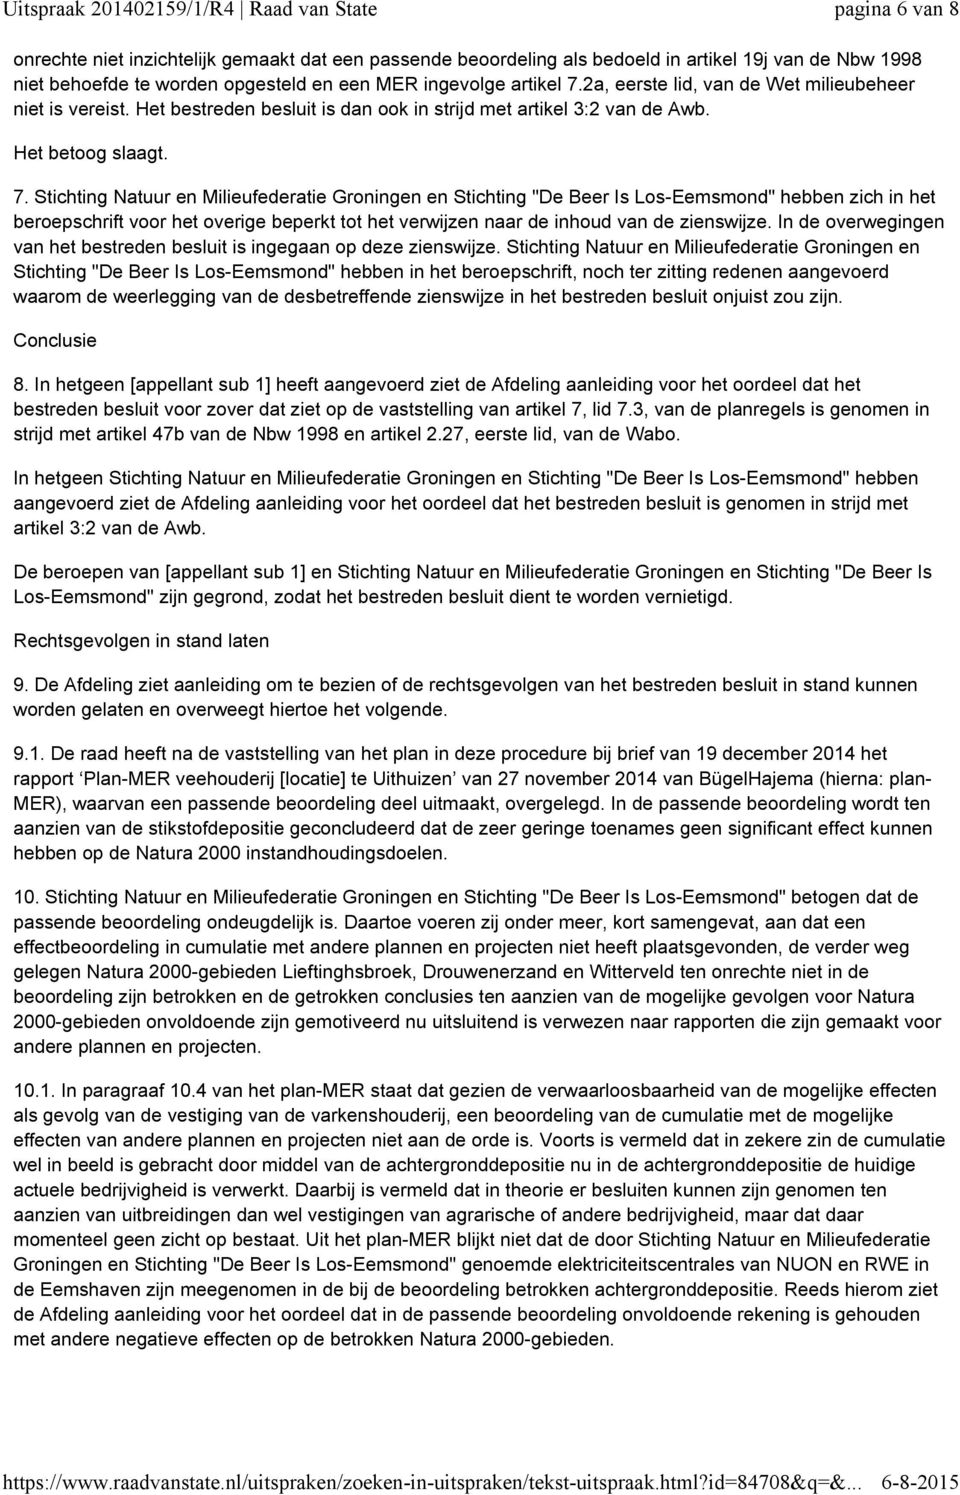 Stichting Natuur en Milieufederatie Groningen en Stichting "De Beer Is Los-Eemsmond" hebben zich in het beroepschrift voor het overige beperkt tot het verwijzen naar de inhoud van de zienswijze.